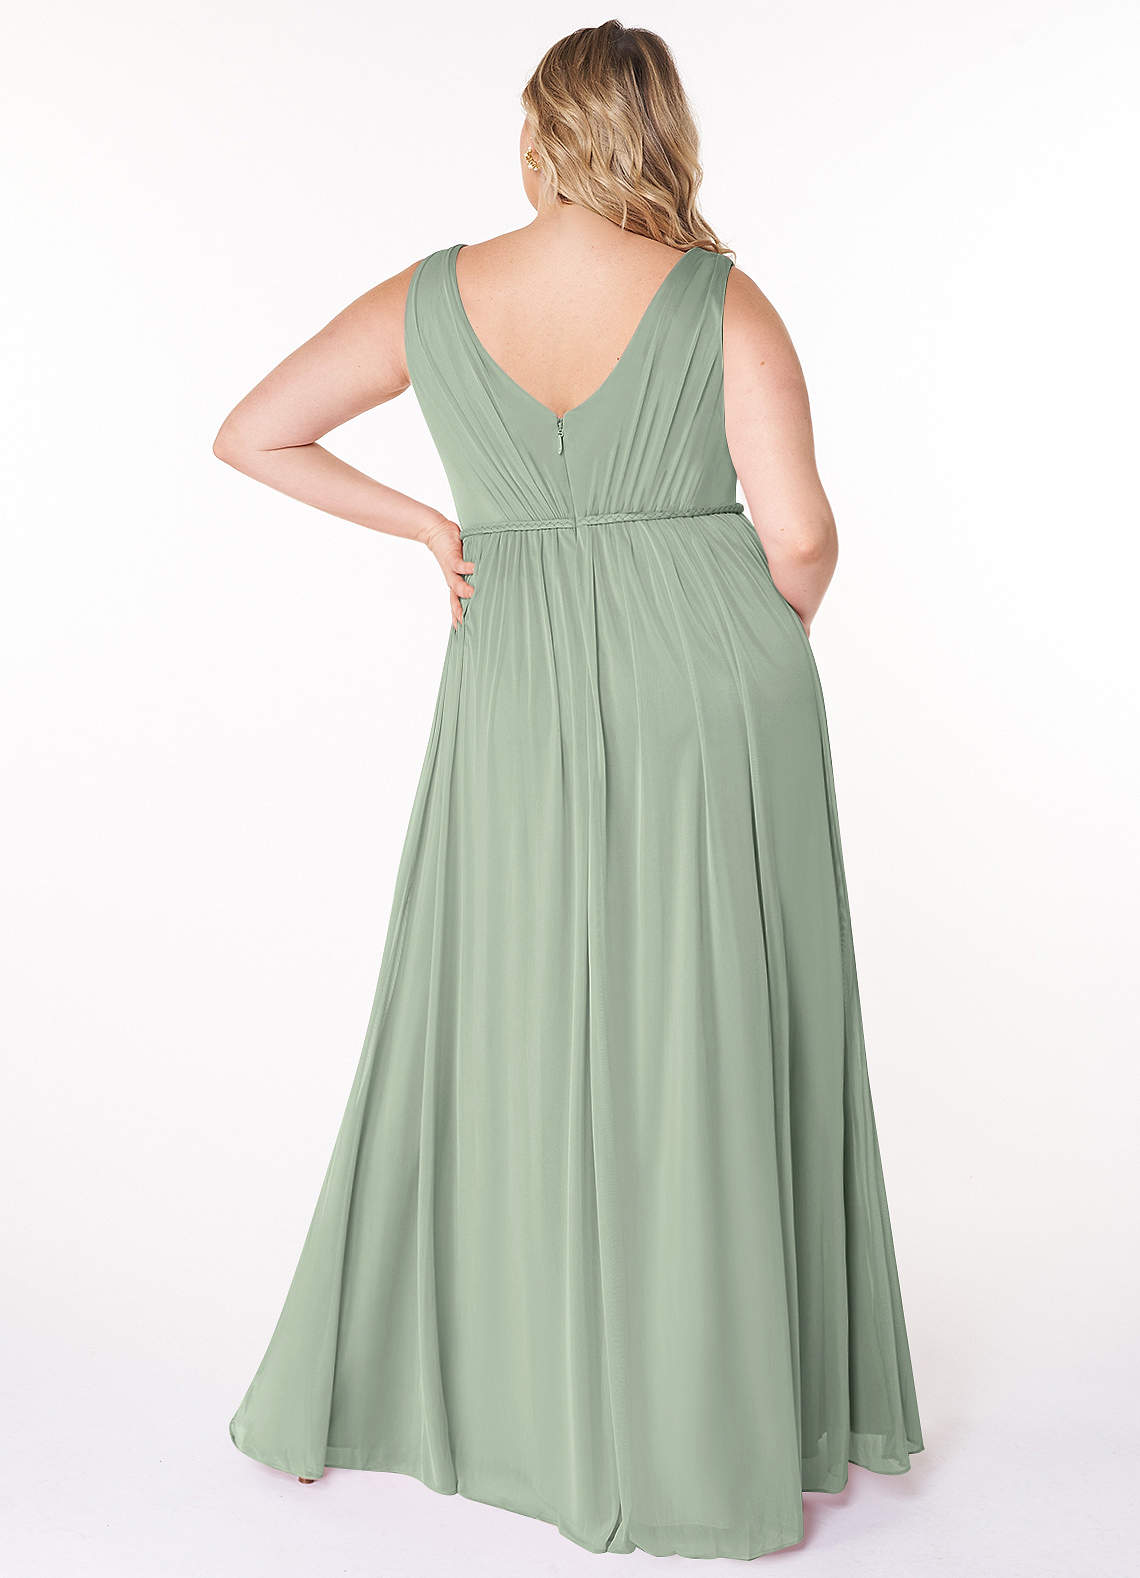 Azazie Tanicia Bridesmaid Dresses A-Line V-Neck Pleated Mesh Floor-Length Dress image1